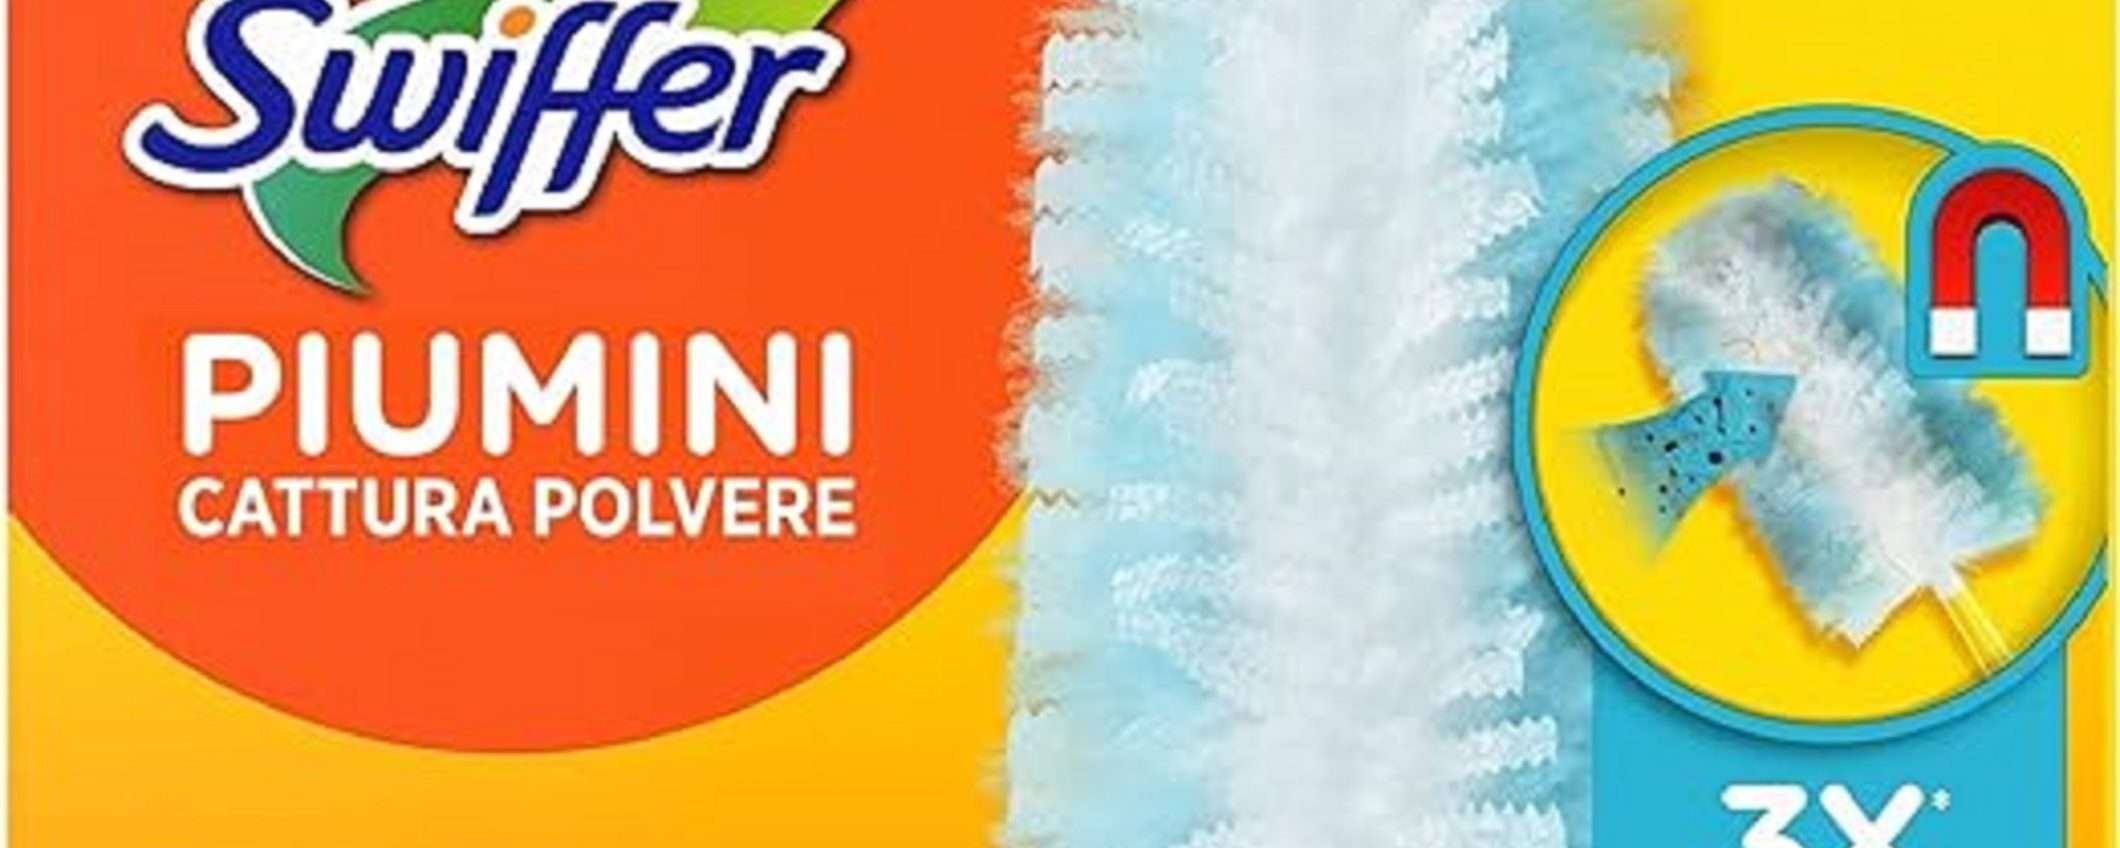 Swiffer Duster: 42 piumini cattura polvere a 29,99 euro su Amazon